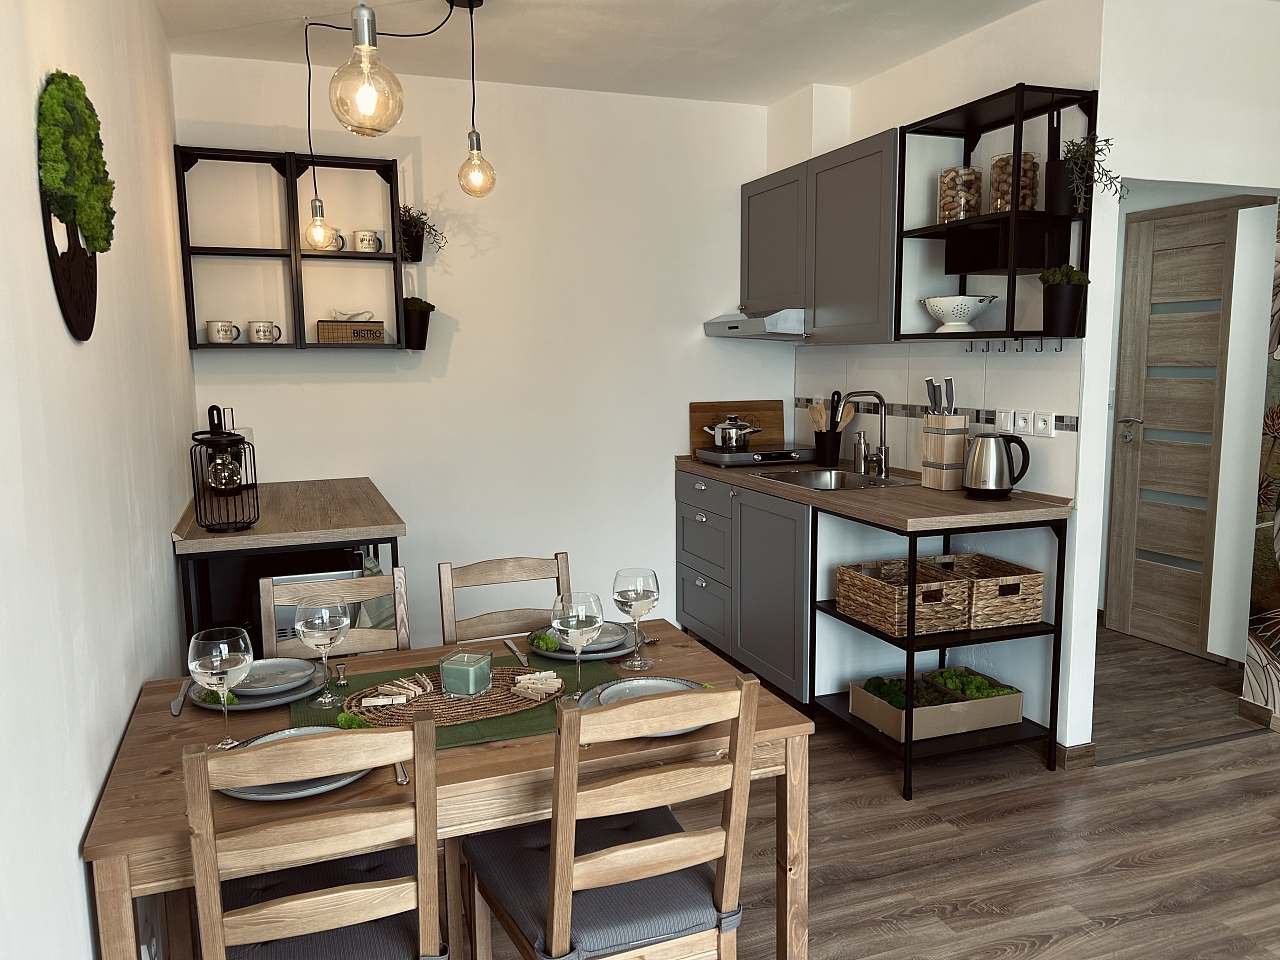 Mechový apartmán, kuchyňský kout s ostrůvkem pro přípravu jídla a jídelní stůl